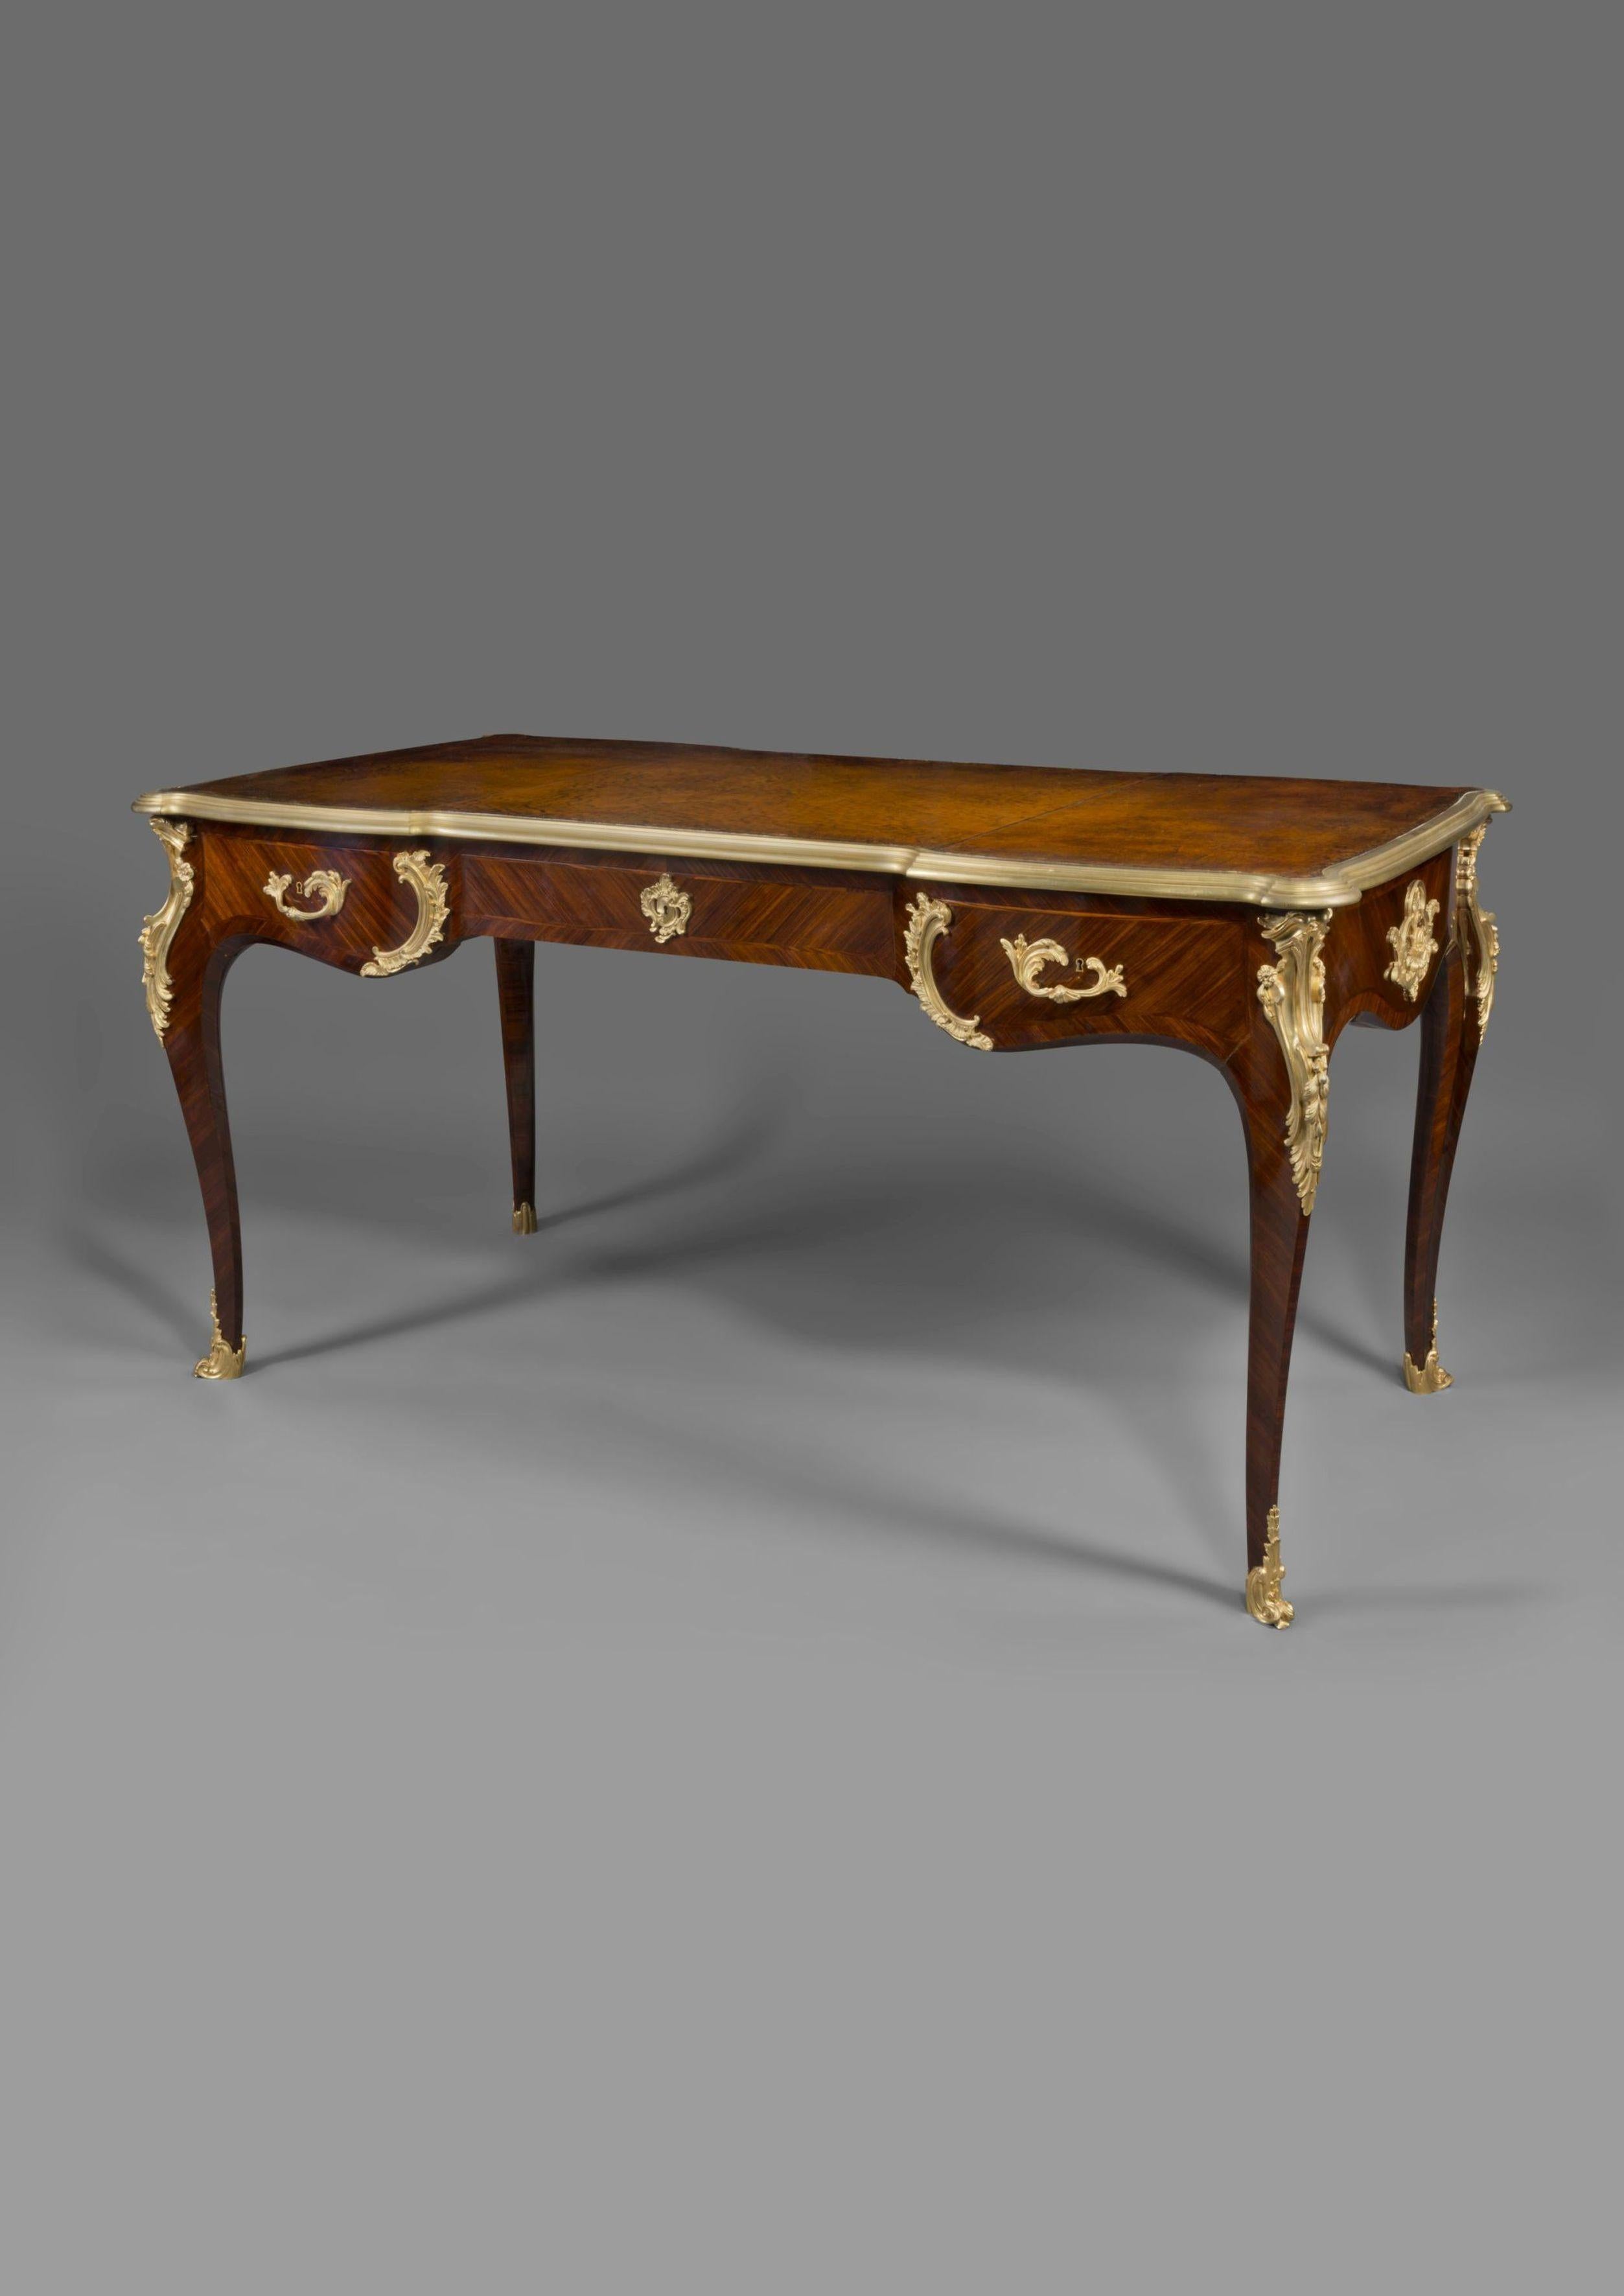 Un bureau plat de style Louis XV monté en bronze doré à la manière de Charles Cressent.

Français, datant d'environ 1890. 

Avec un tiroir central en frise et deux tiroirs d'extrémité en forme, sur des pieds cabriole avec des sabots